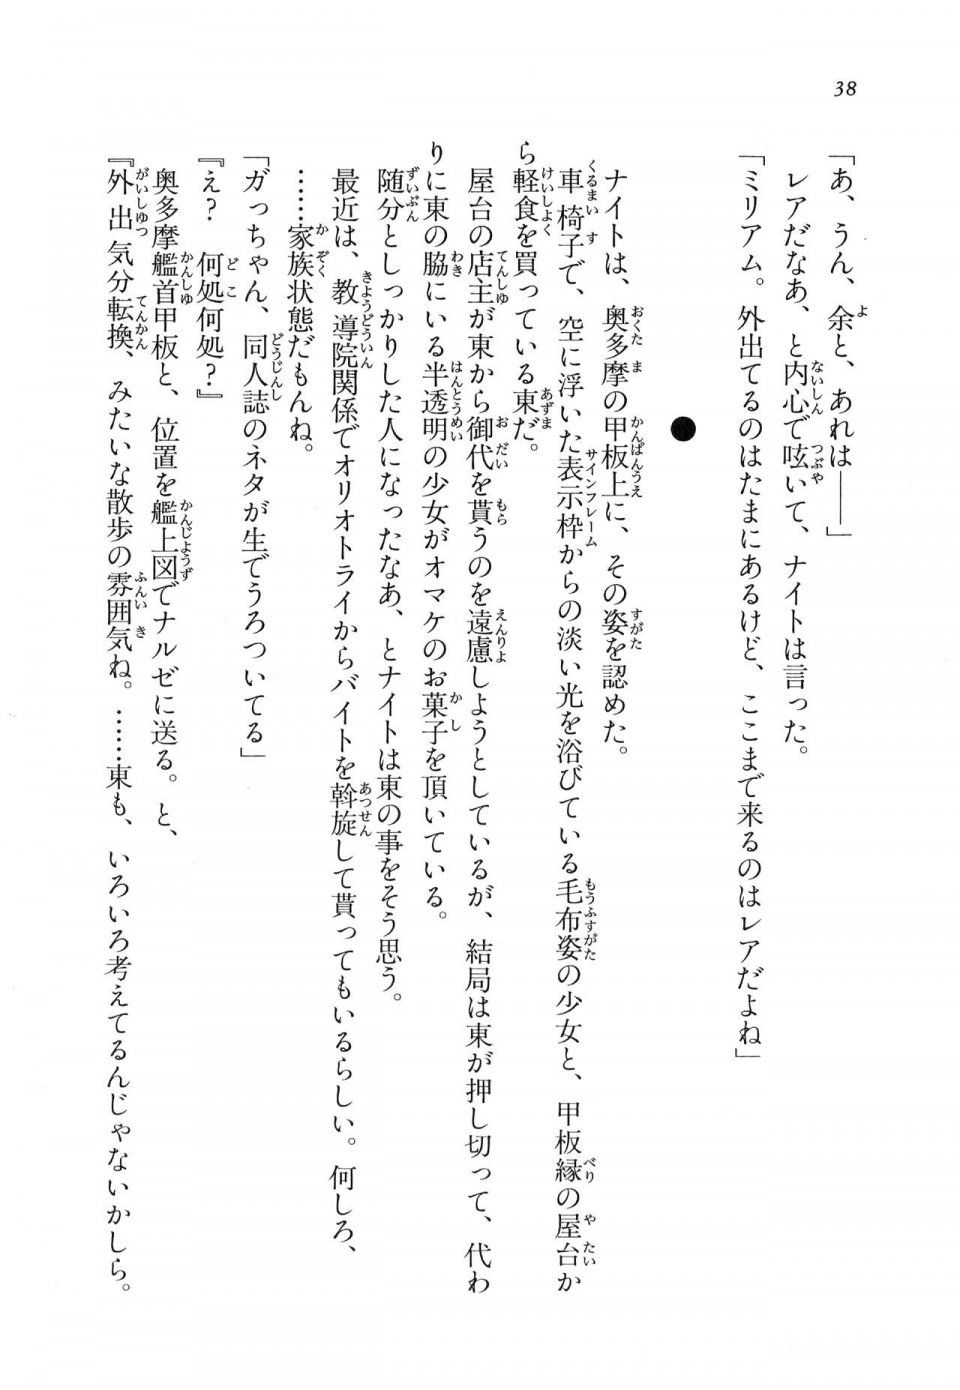 Kyoukai Senjou no Horizon LN Vol 11(5A) - Photo #39